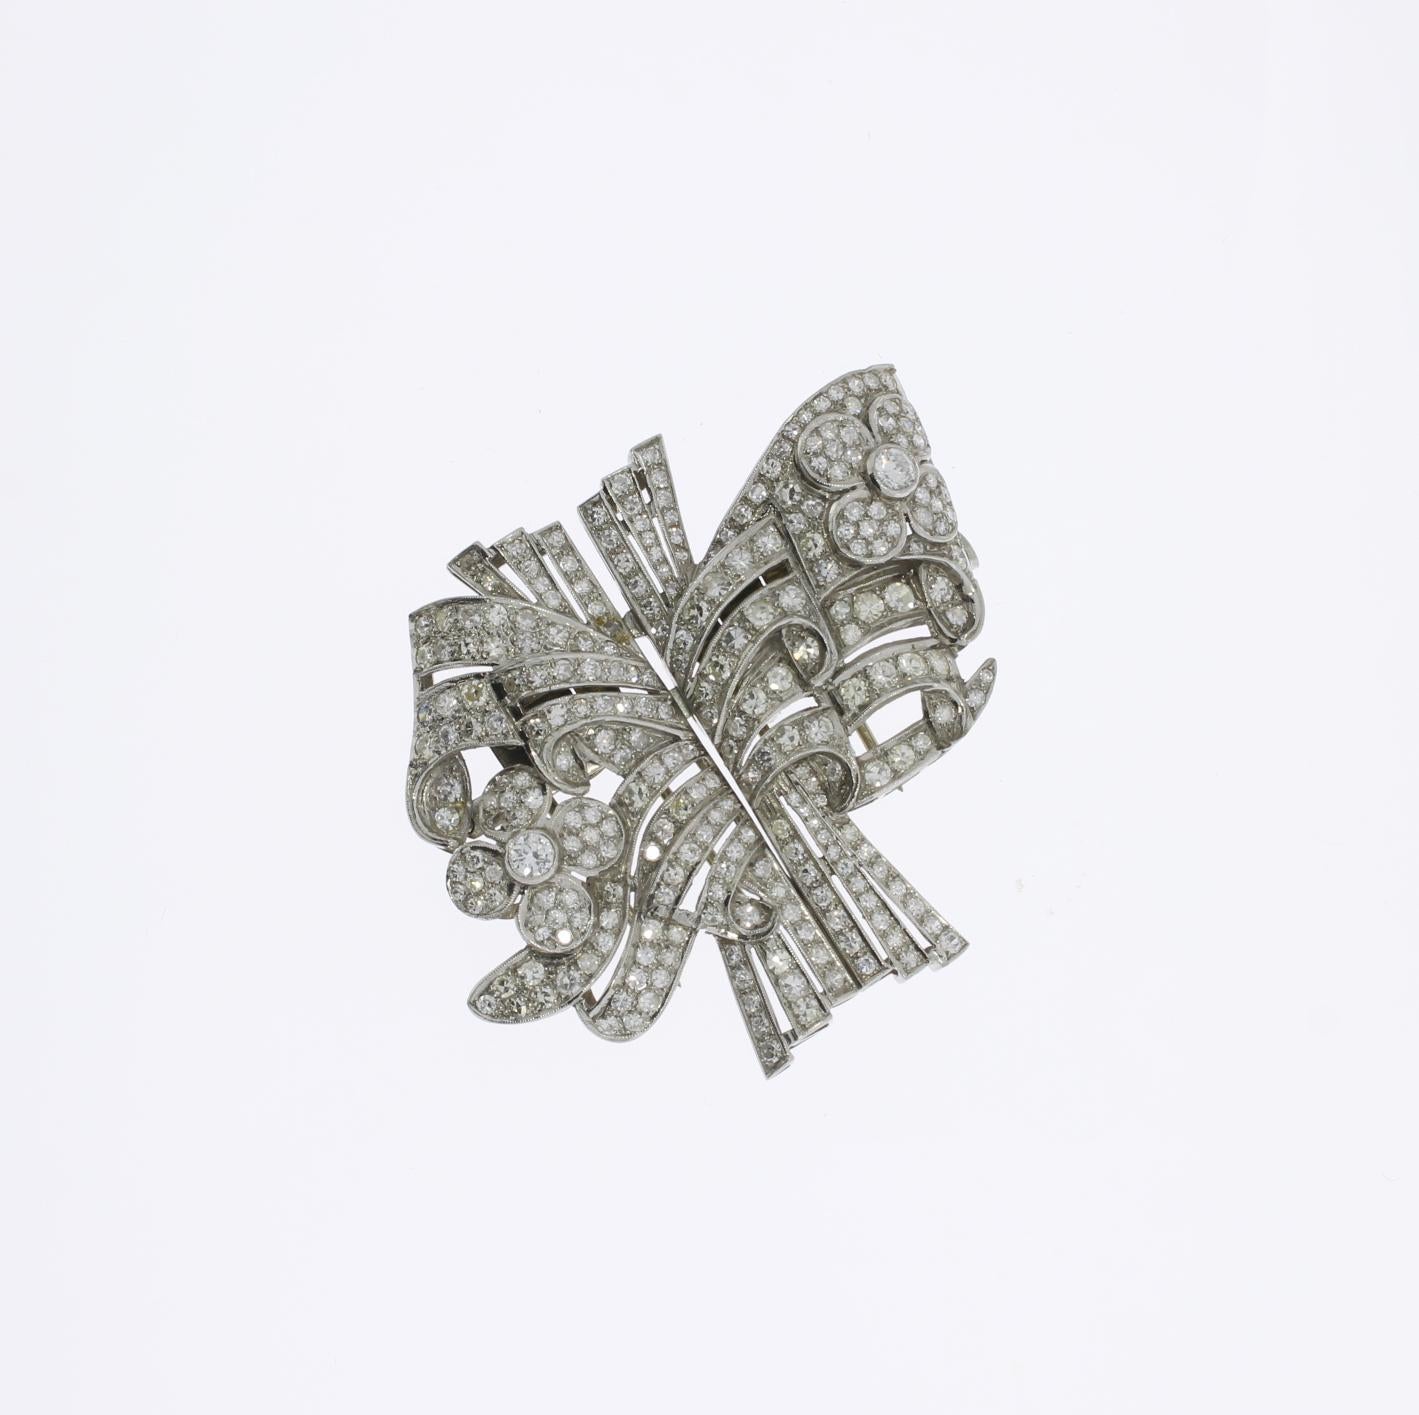 Une impressionnante pièce art déco au design géométrique composée de deux panneaux symétriques. 268 diamants d'un poids total d'environ 6,68 carats. Monté en platine. Poids : 28,96 g. 
Les mesures sont les suivantes : Hauteur : 1.85 in ( 4,7 cm ),